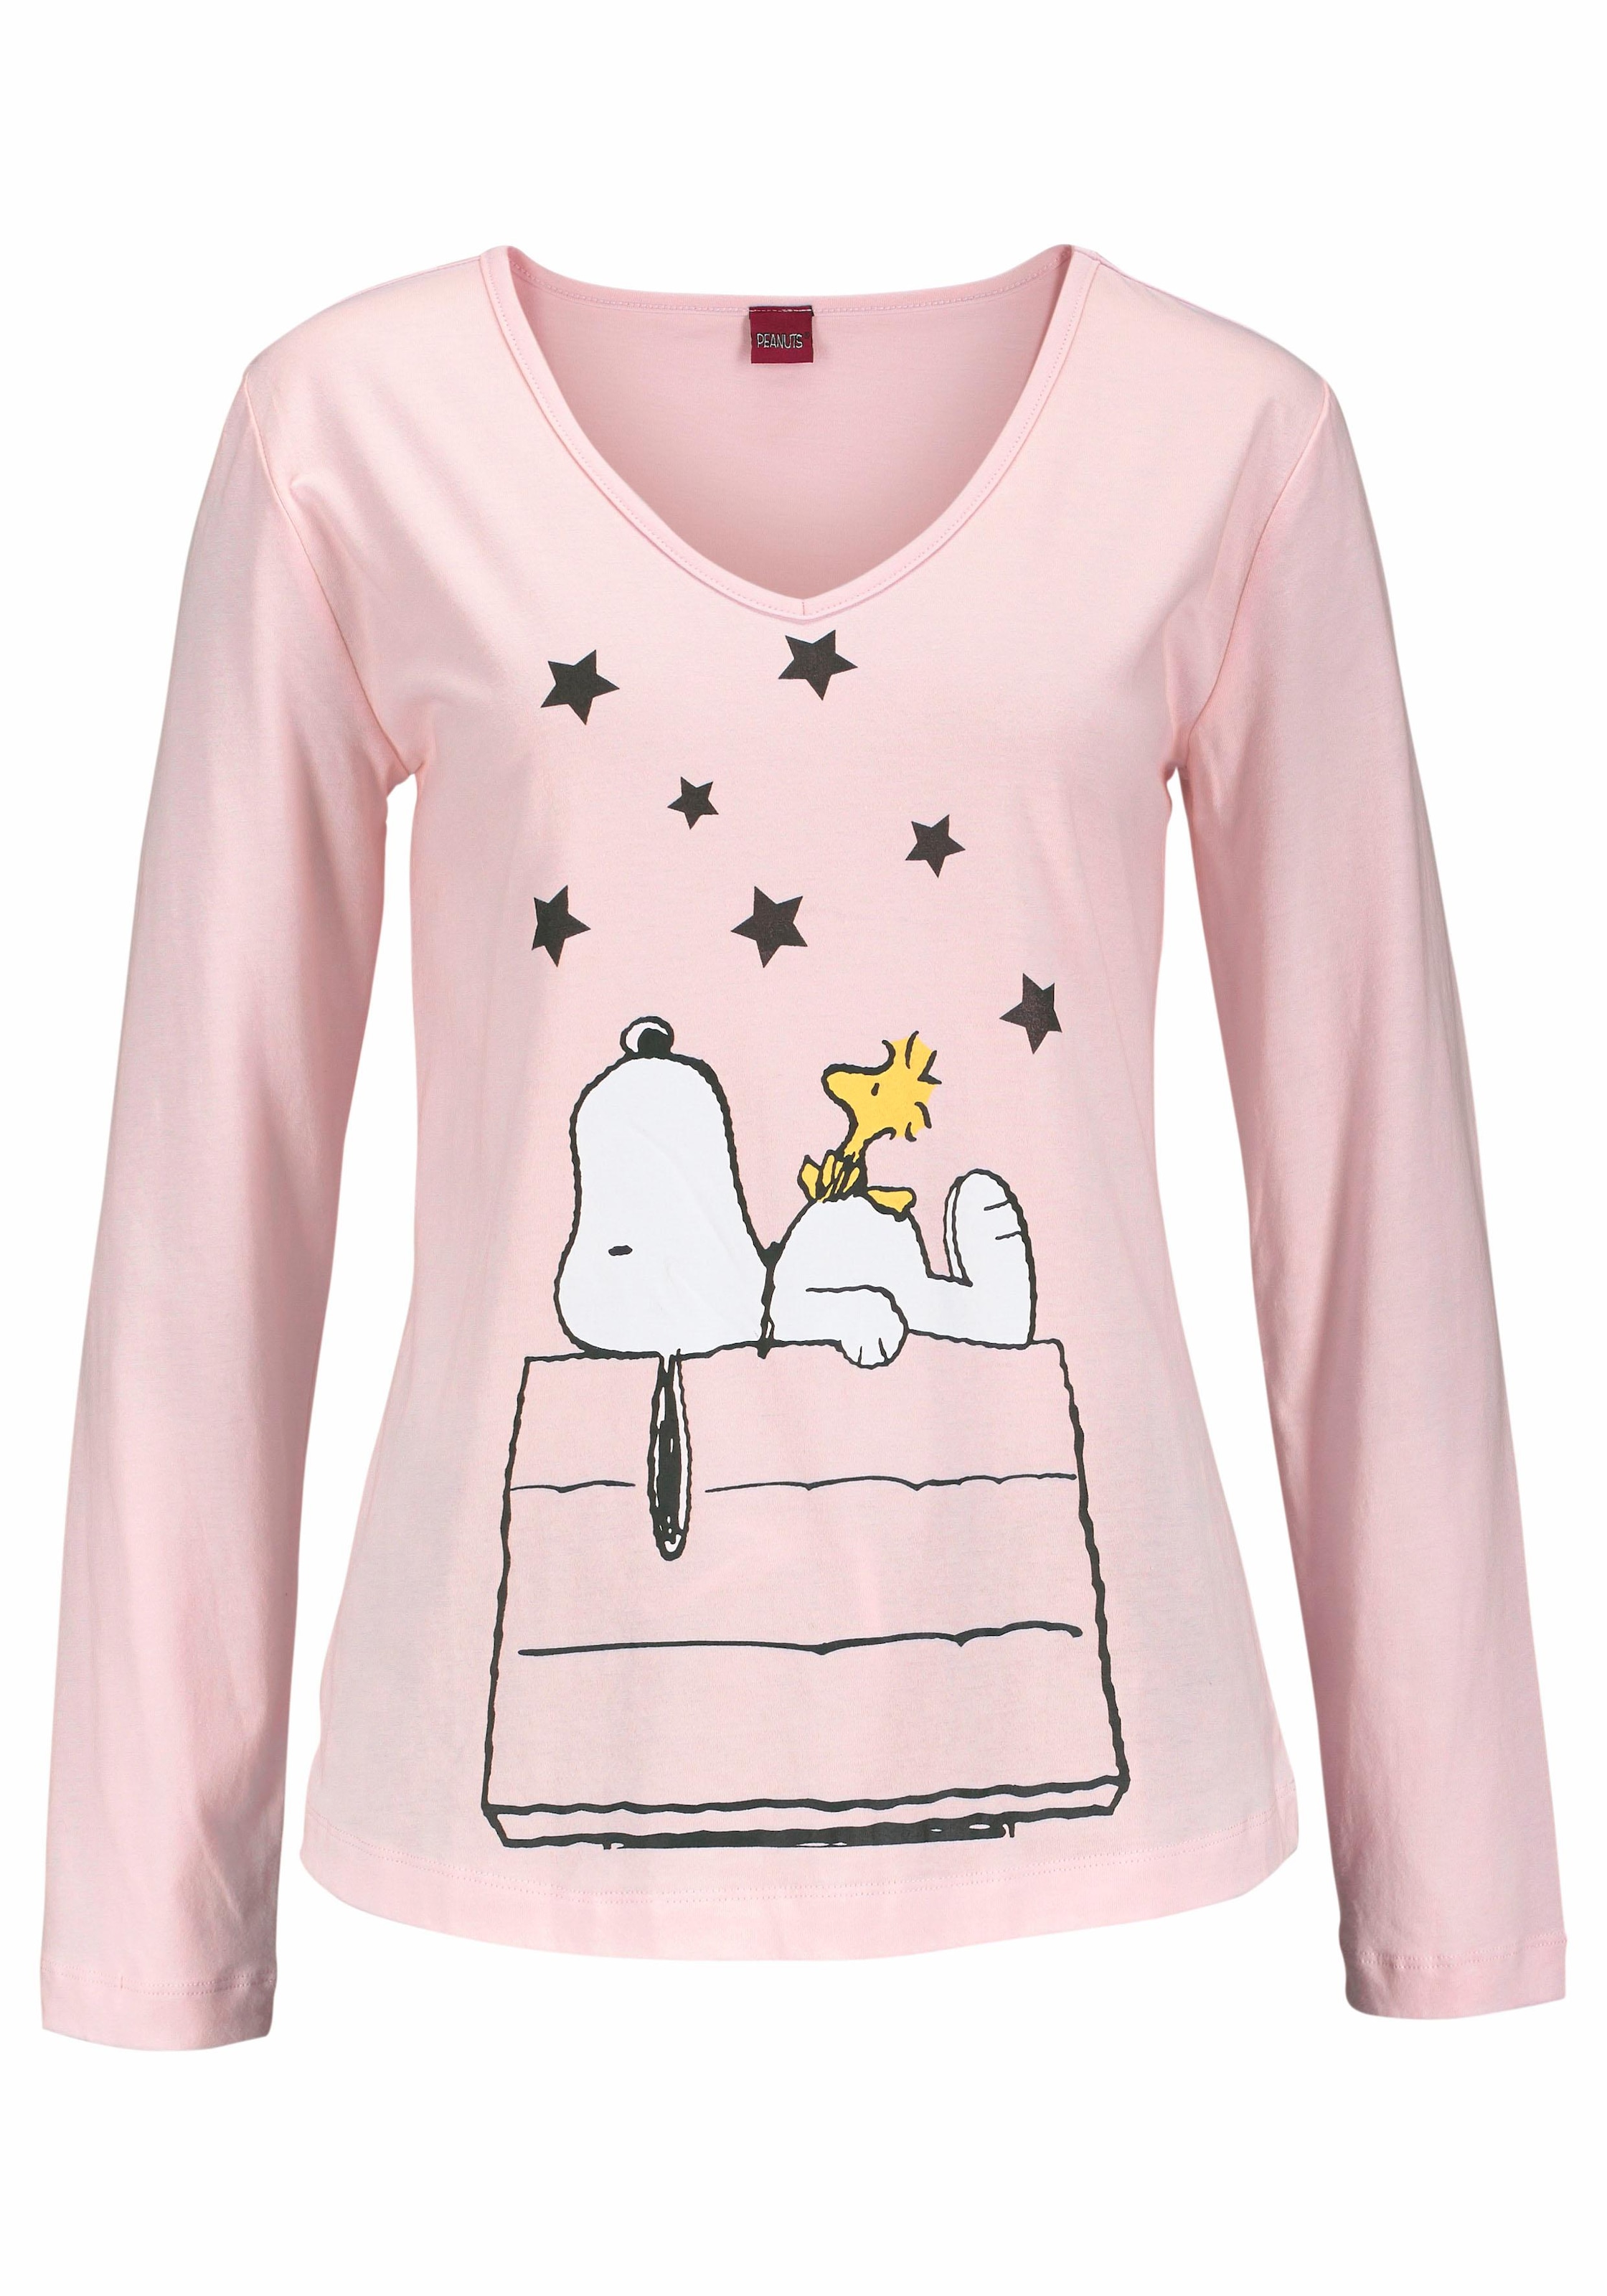 Snoopy-Design Peanuts langer tlg., (2 Pyjama, niedlichen im bei 1 in Stück), Form ♕